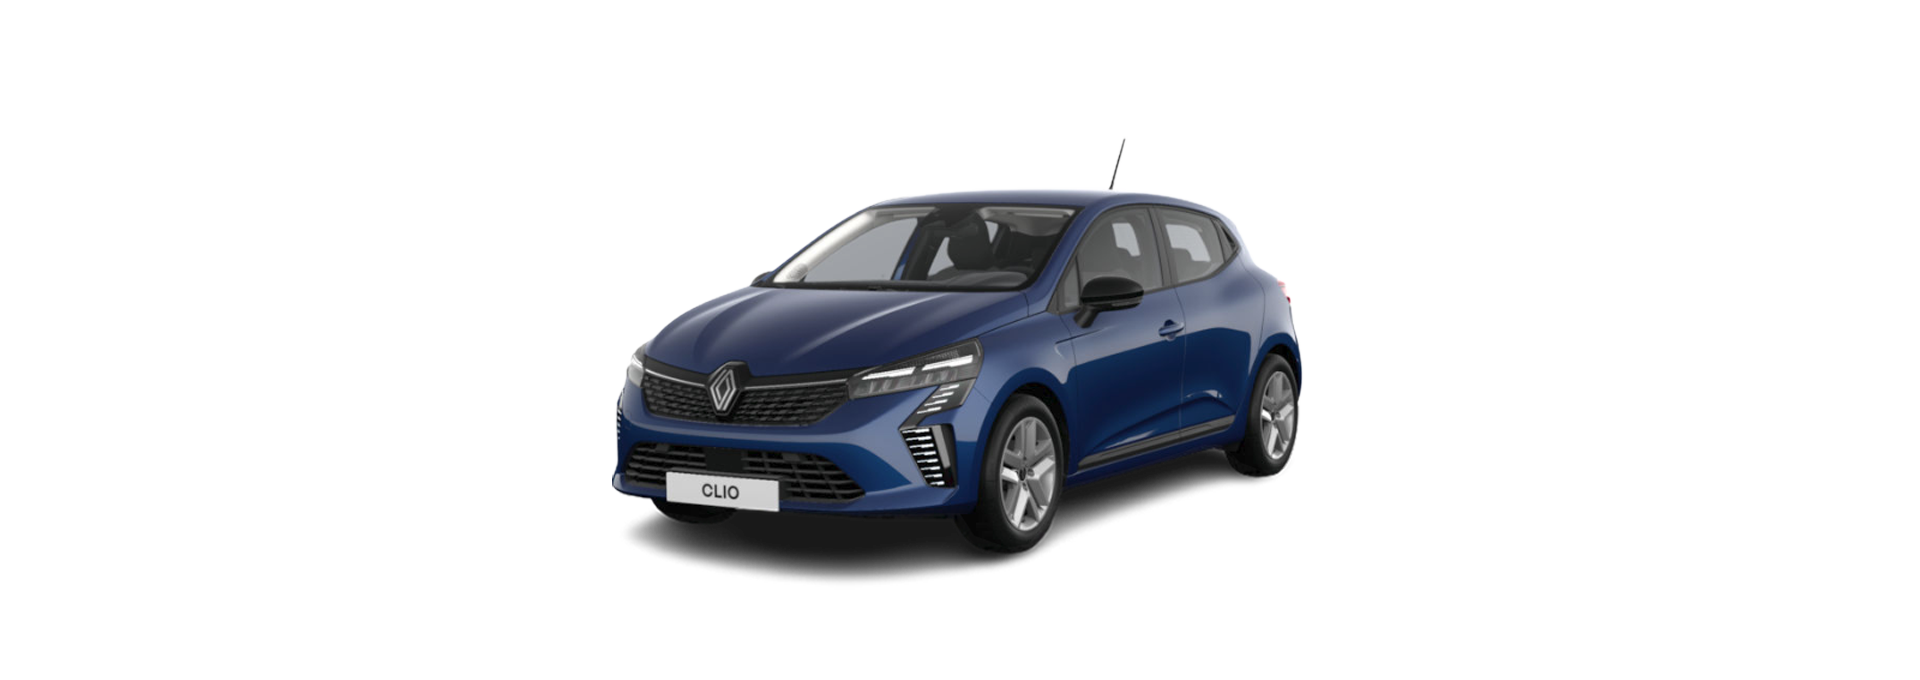 Renault NUEVO CLIO